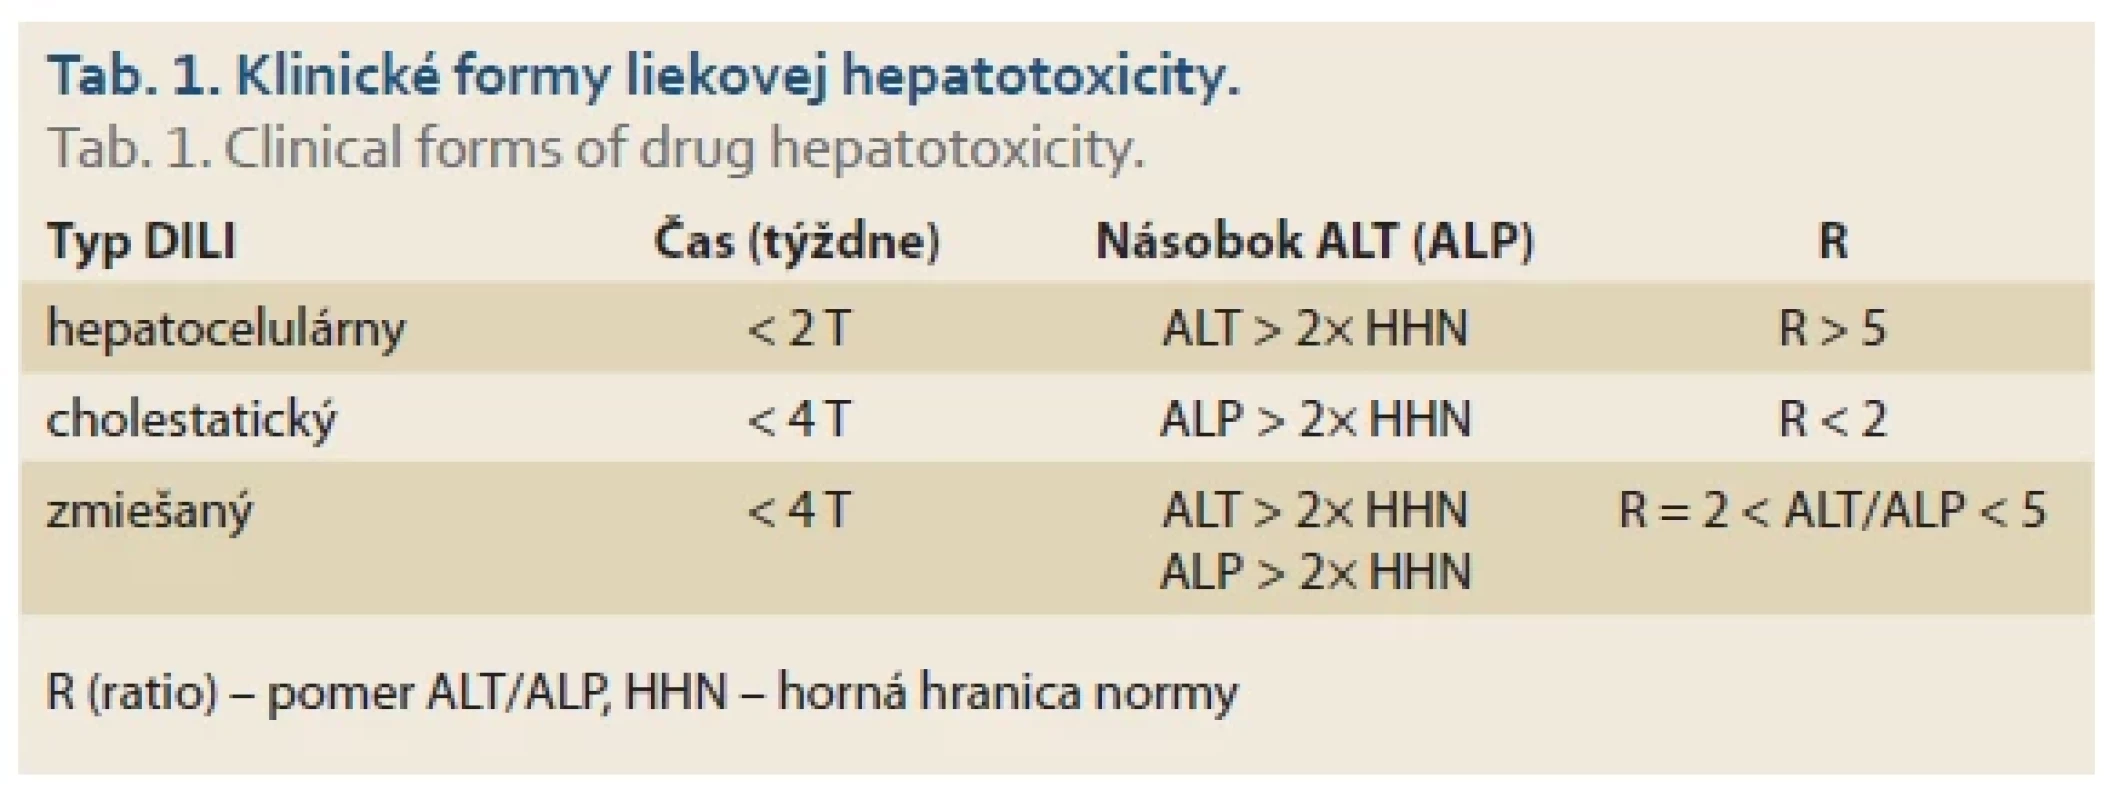  Klinické formy liekovej hepatotoxicity. <br> 
Tab. 1. Clinical forms of drug hepatotoxicity.